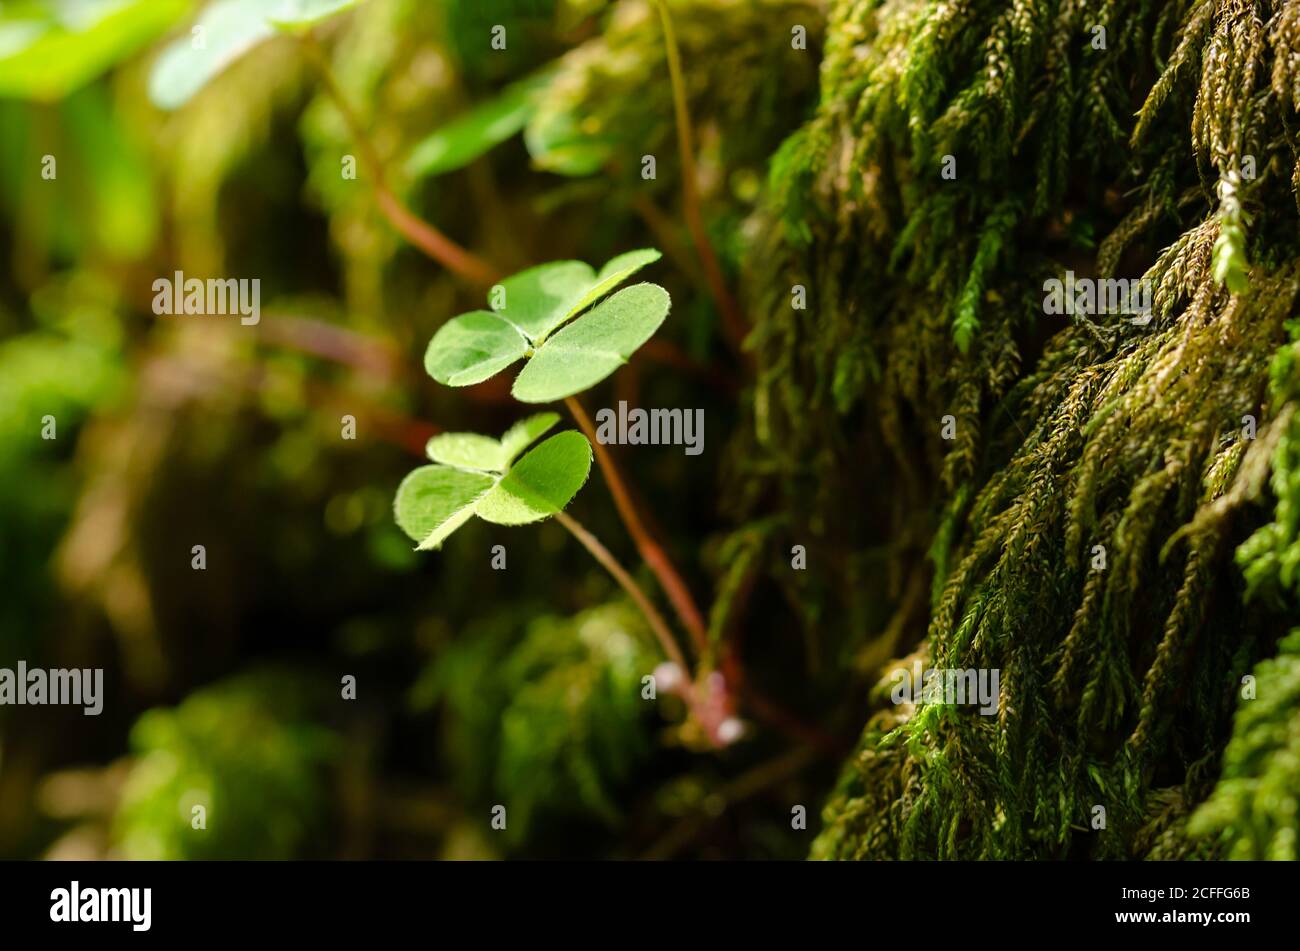 Holzschnauze, wächst auf einem grünen moosigen Stein im Wald. Oxalis acetosella, gemeiner Holzschnauzer, wird manchmal als Schamrock bezeichnet, als Geschenk gegeben. Stockfoto